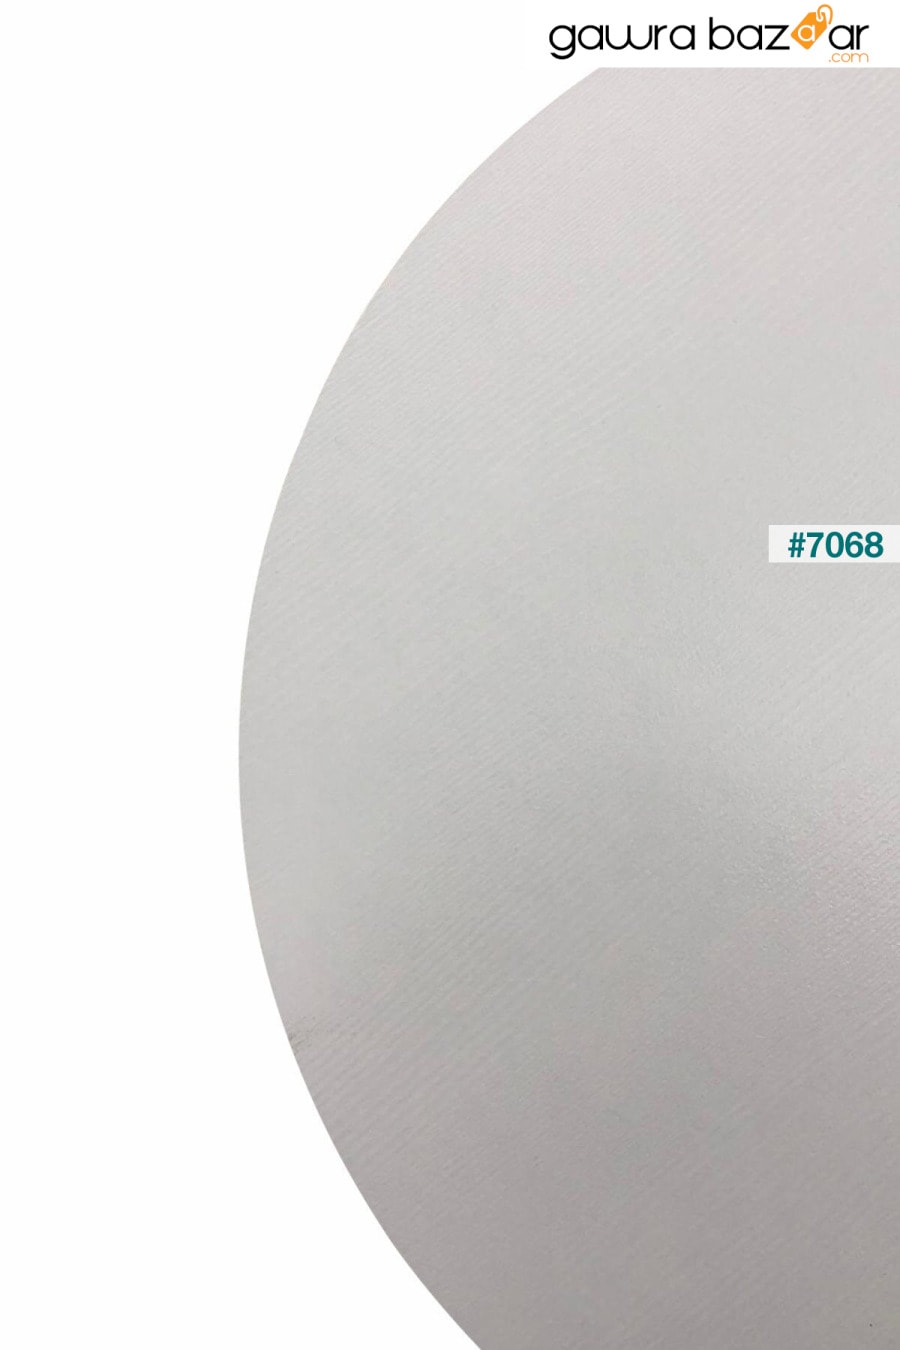 طاولة مطبخ مستديرة بيضاء طبيعية من افانوس - Q90 سم VİLİNZE 4